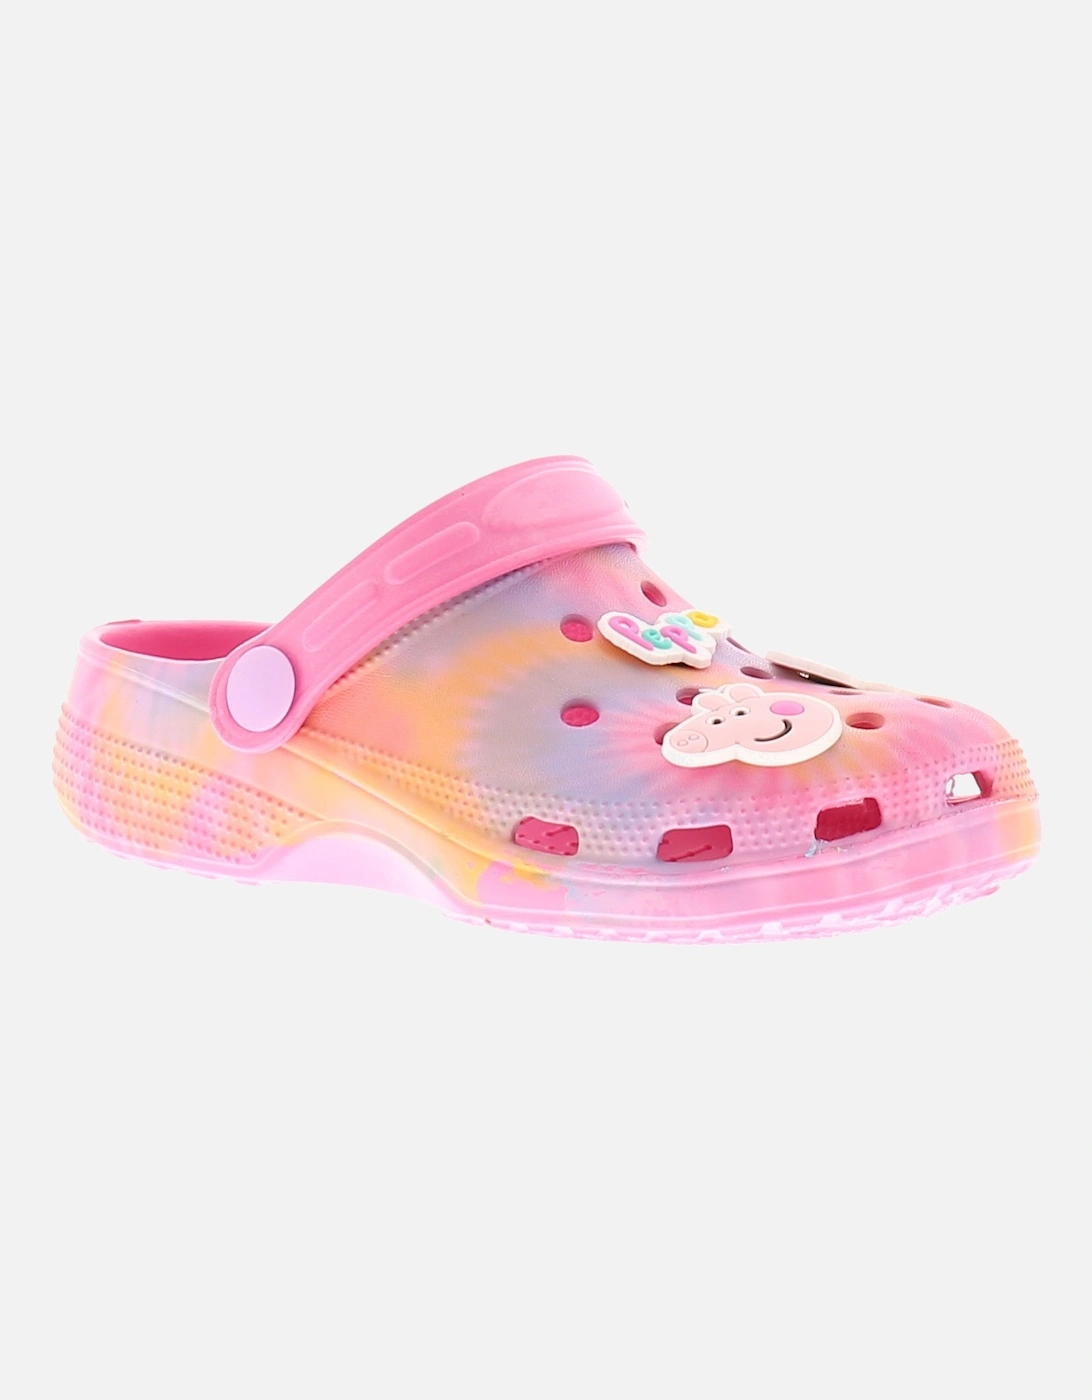 Girls Sandals Infants Sliders Clog pink UK Size, 6 of 5